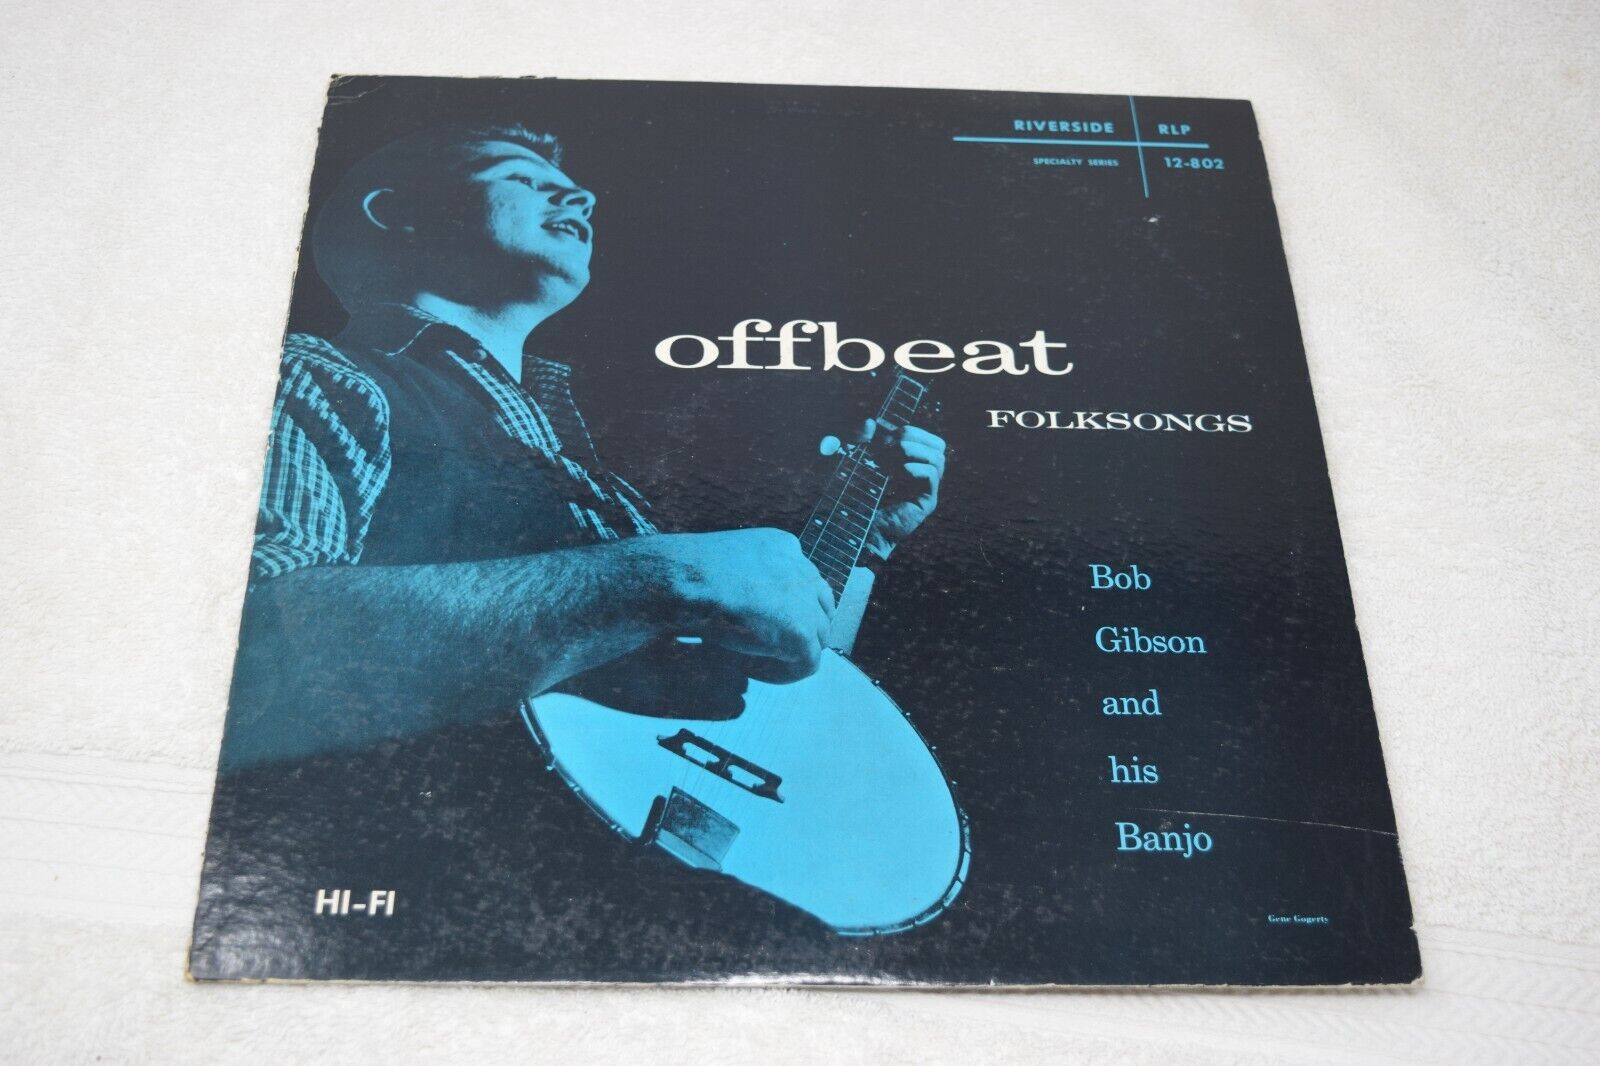 Bob Gibson & His Banjo- Offbeat Folksongs, Riverside RLP12-802, VG